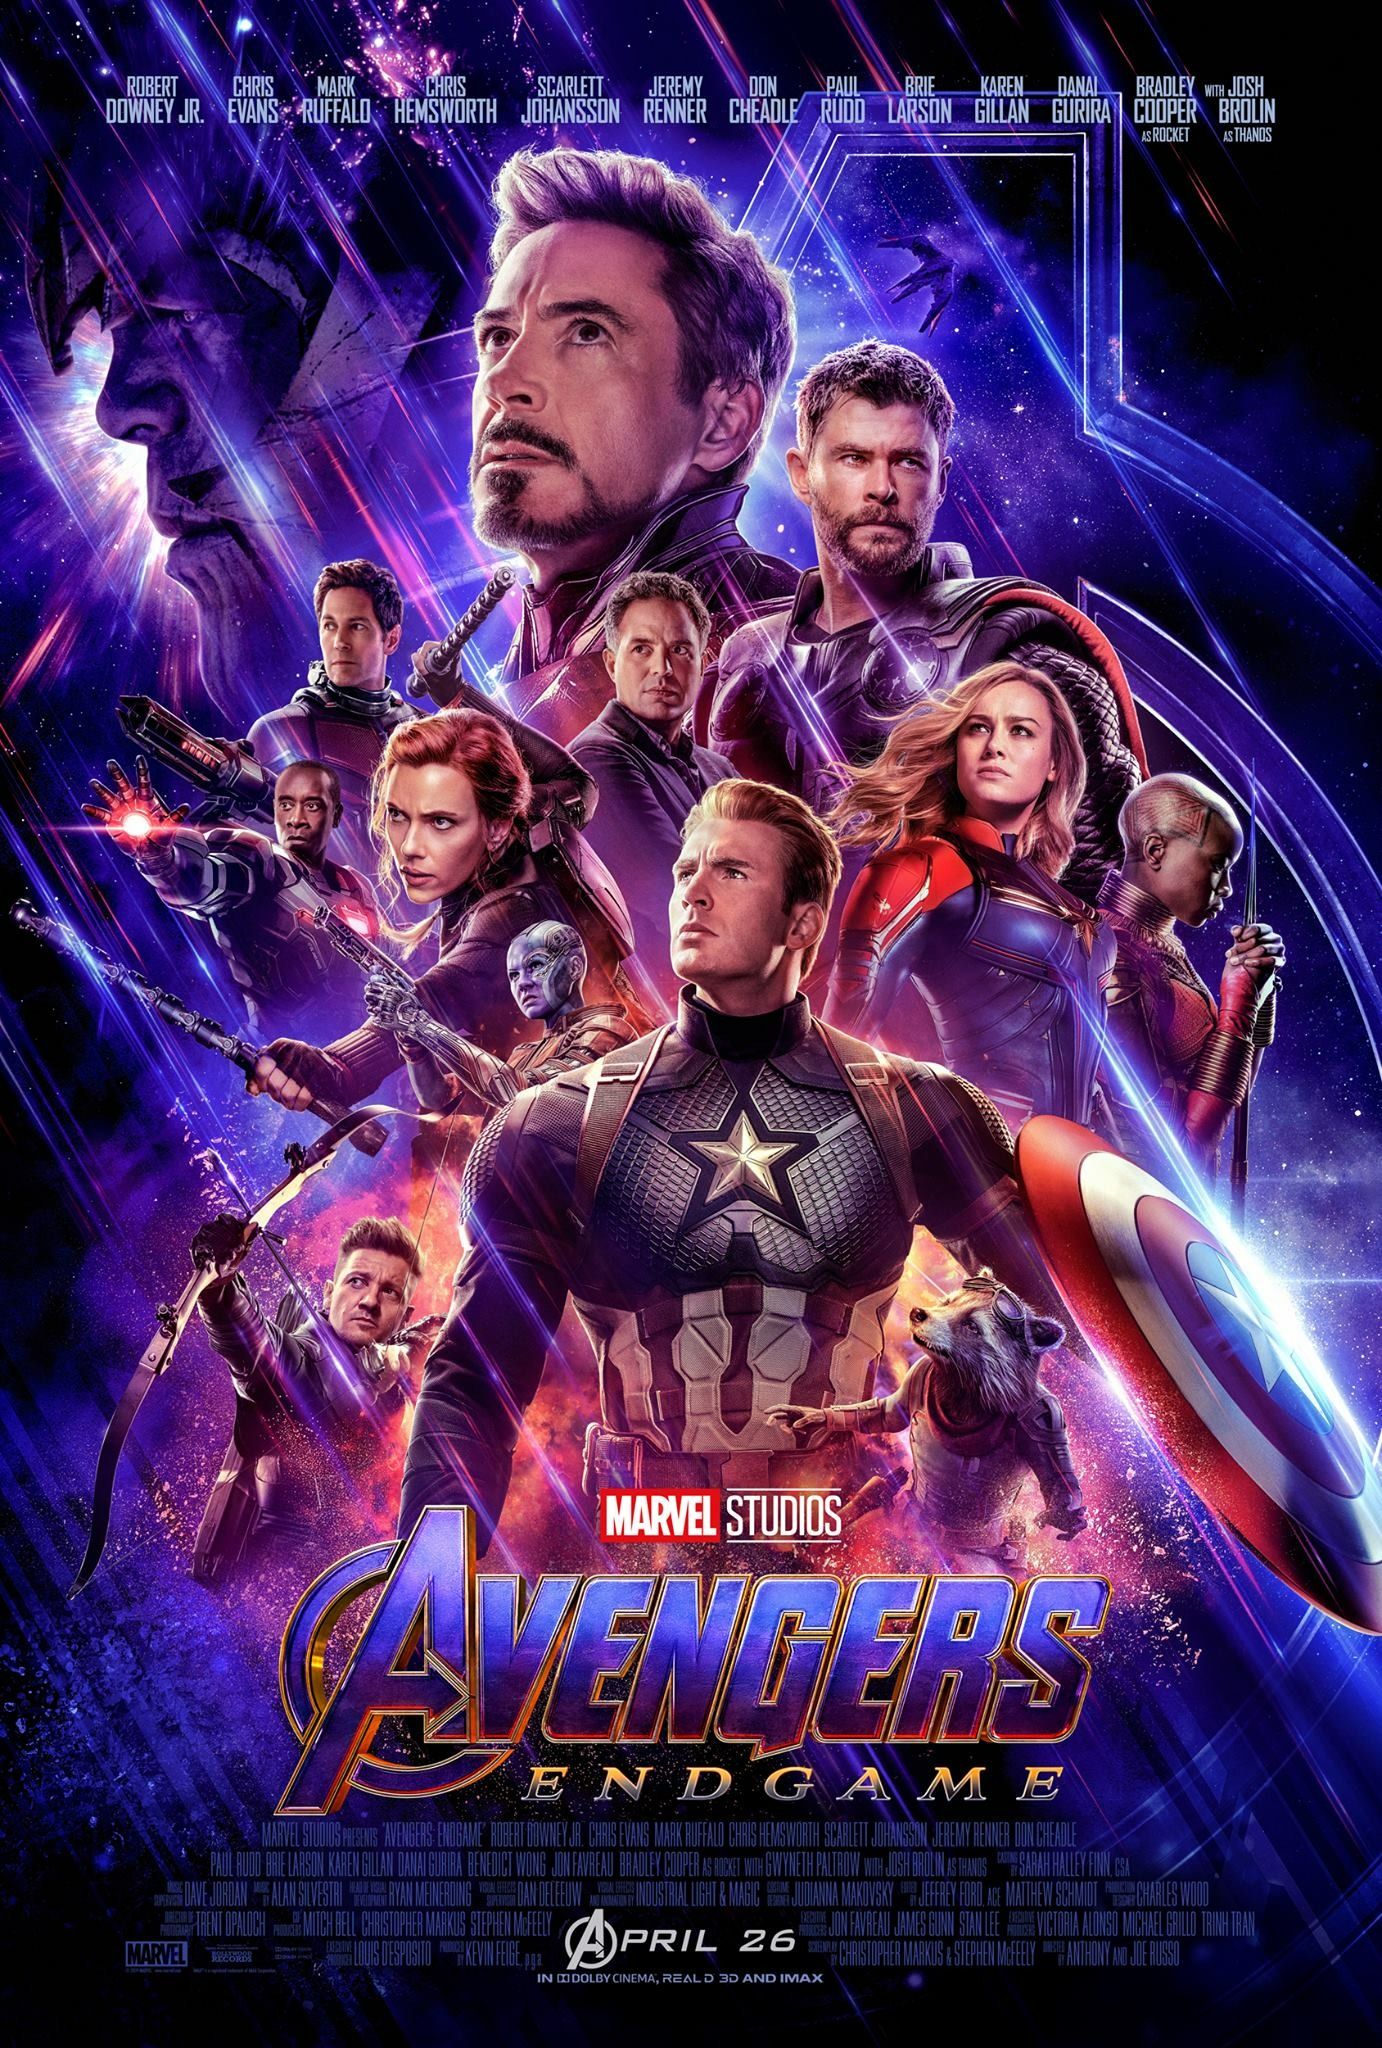 Avengers Endgame updated poster